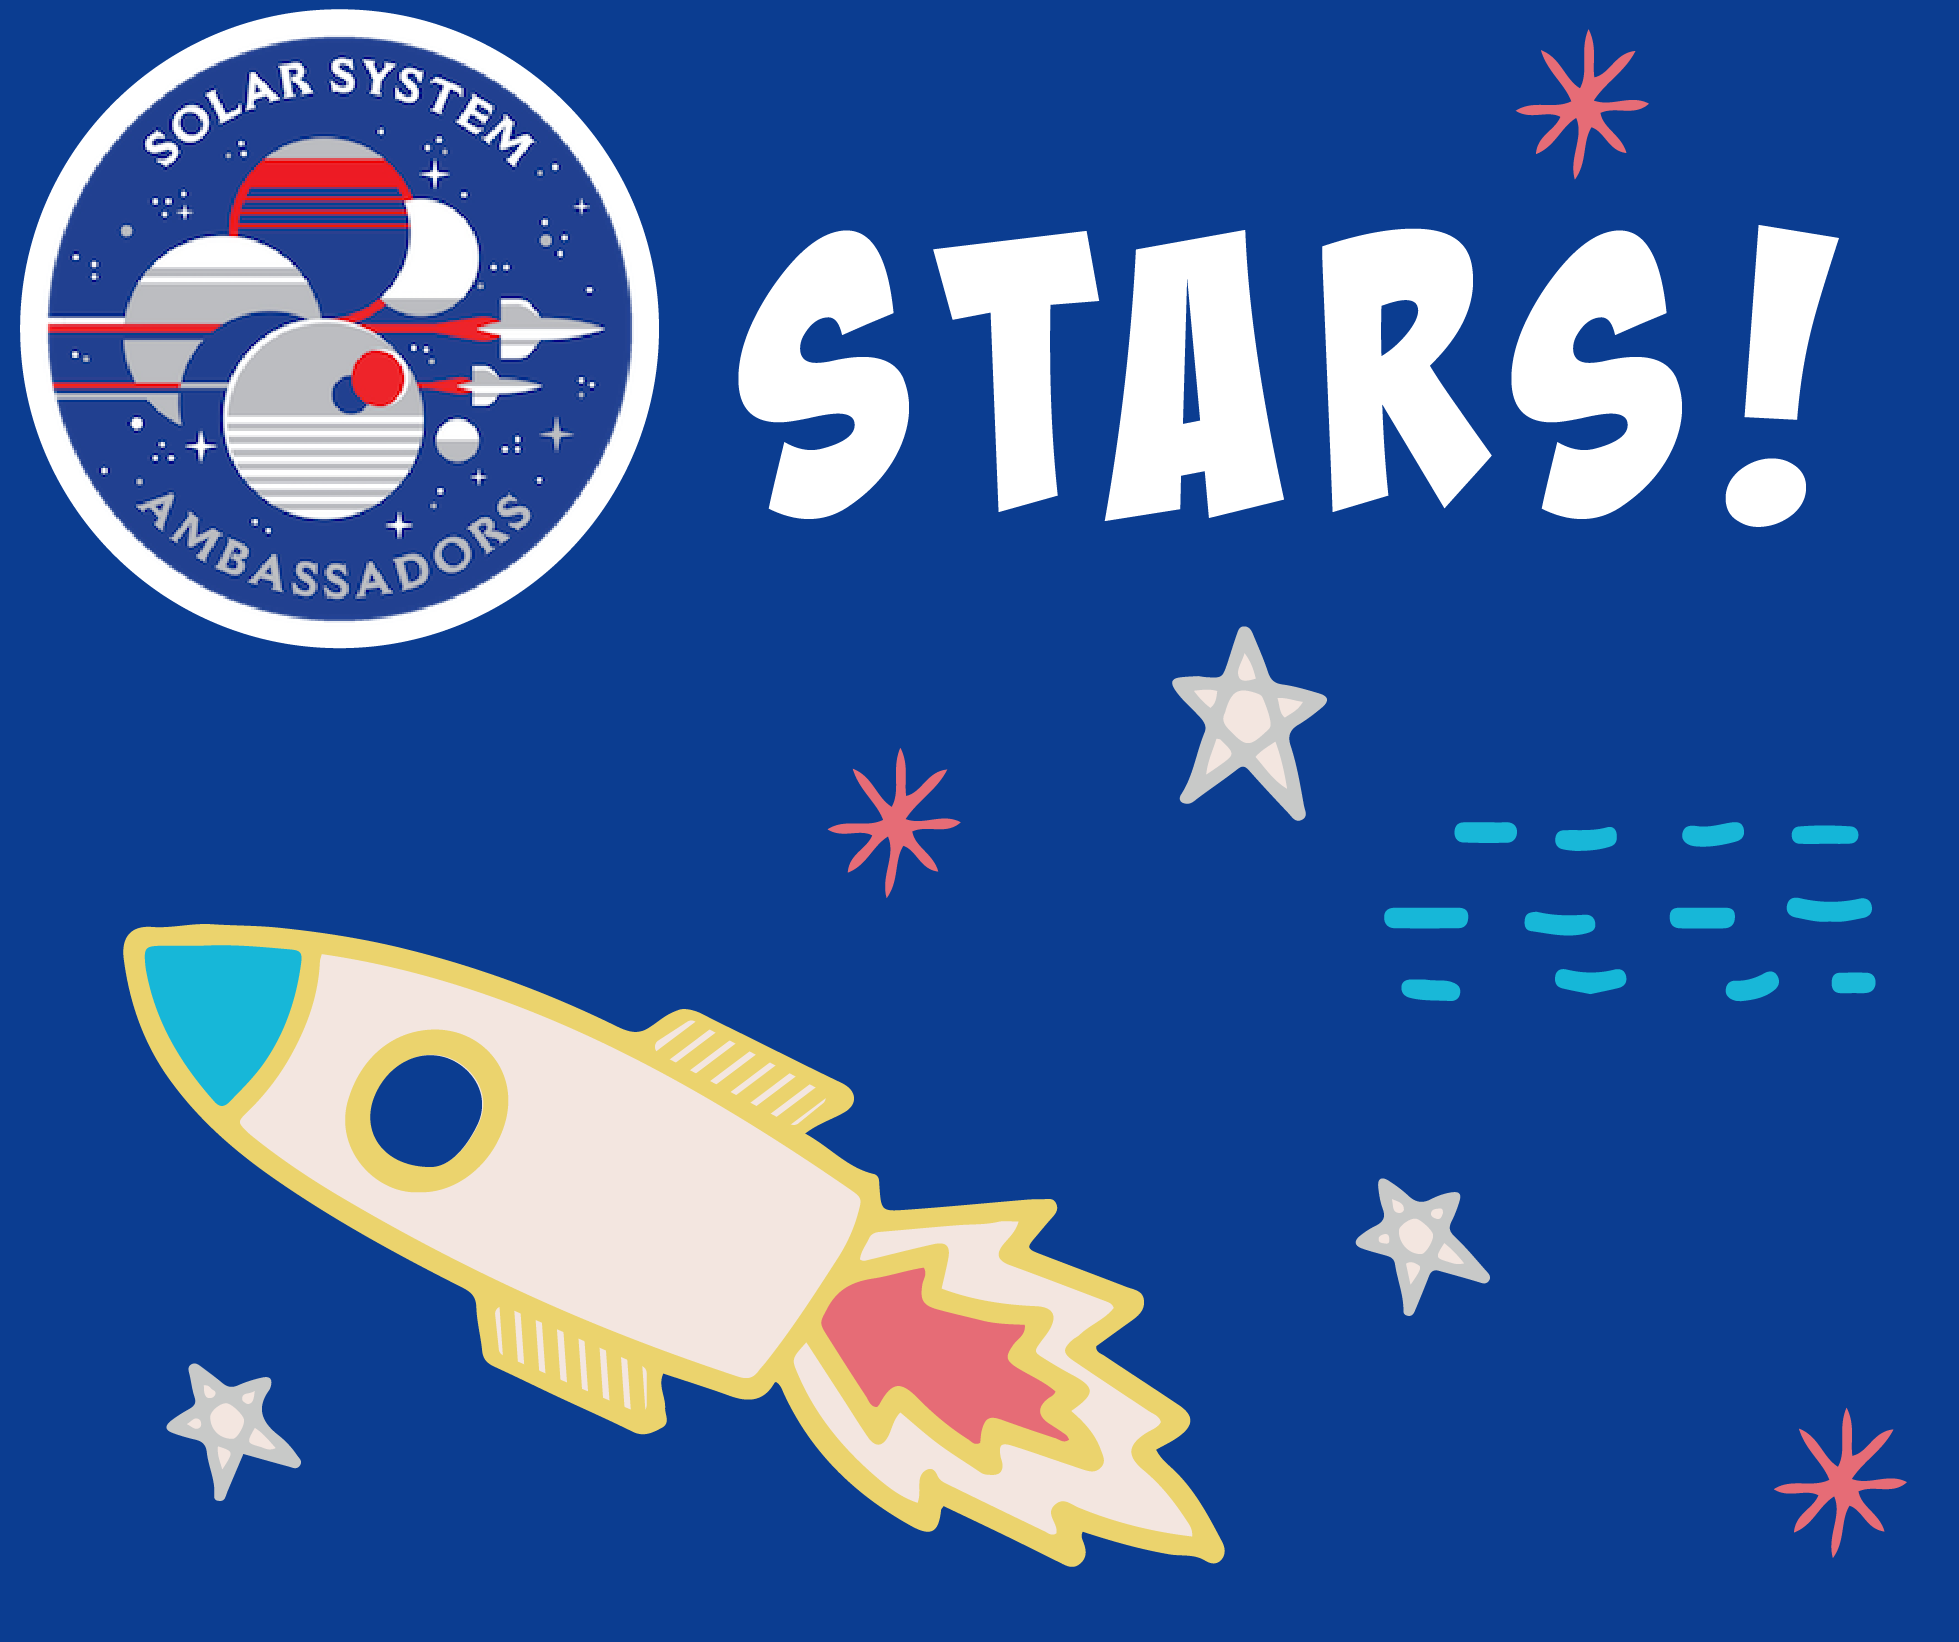 Solar System Ambassador Program: Stars!